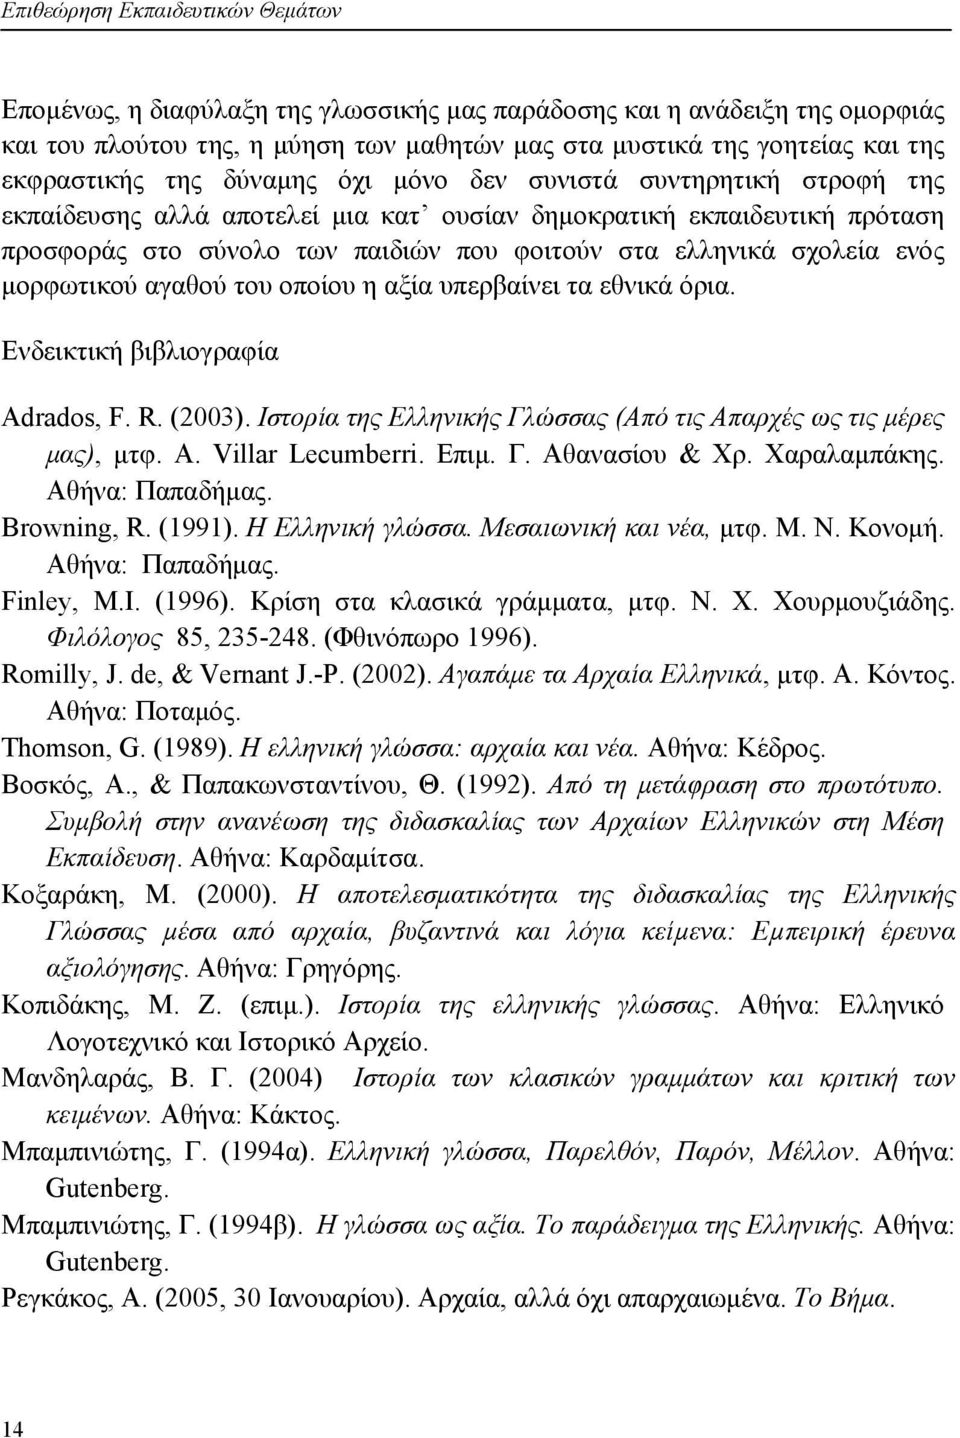 σχολεία ενός μορφωτικού αγαθού του οποίου η αξία υπερβαίνει τα εθνικά όρια. Ενδεικτική βιβλιογραφία Adrados, F. R. (2003). Ιστορία της Ελληνικής Γλώσσας (Από τις Απαρχές ως τις μέρες μας), μτφ. A. Villar Lecumberri.